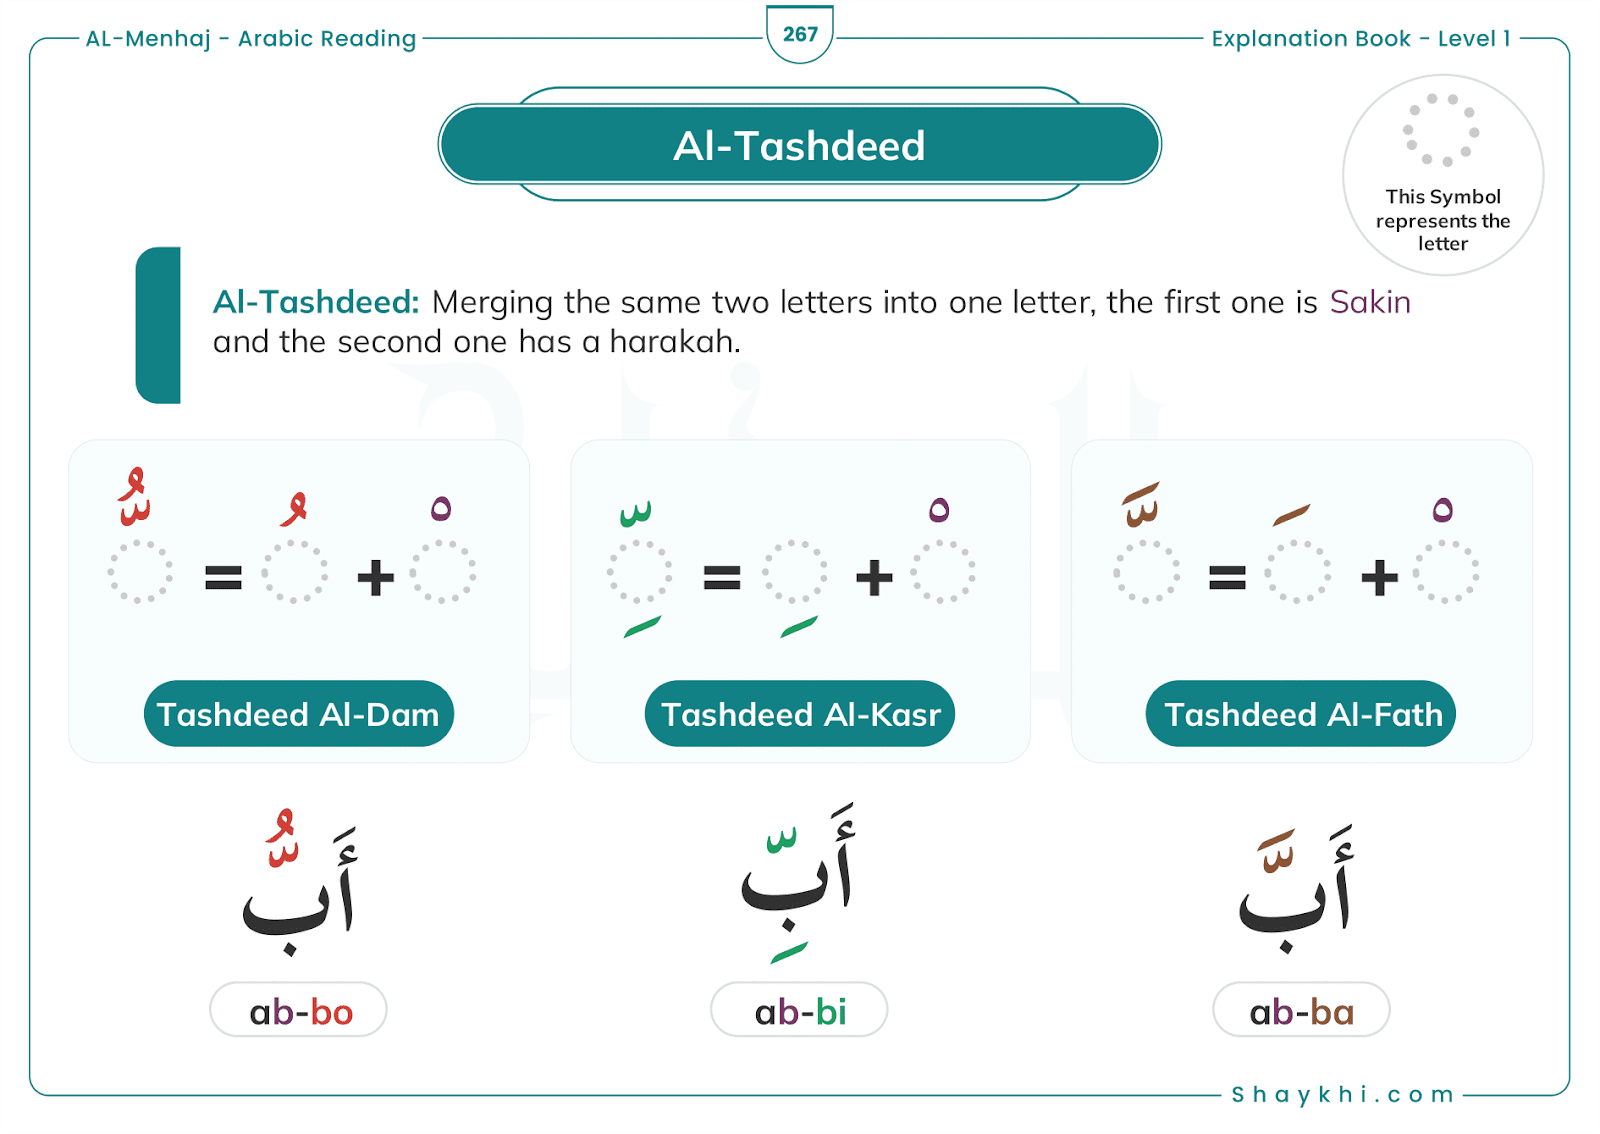 6. Al-Tashdeed: